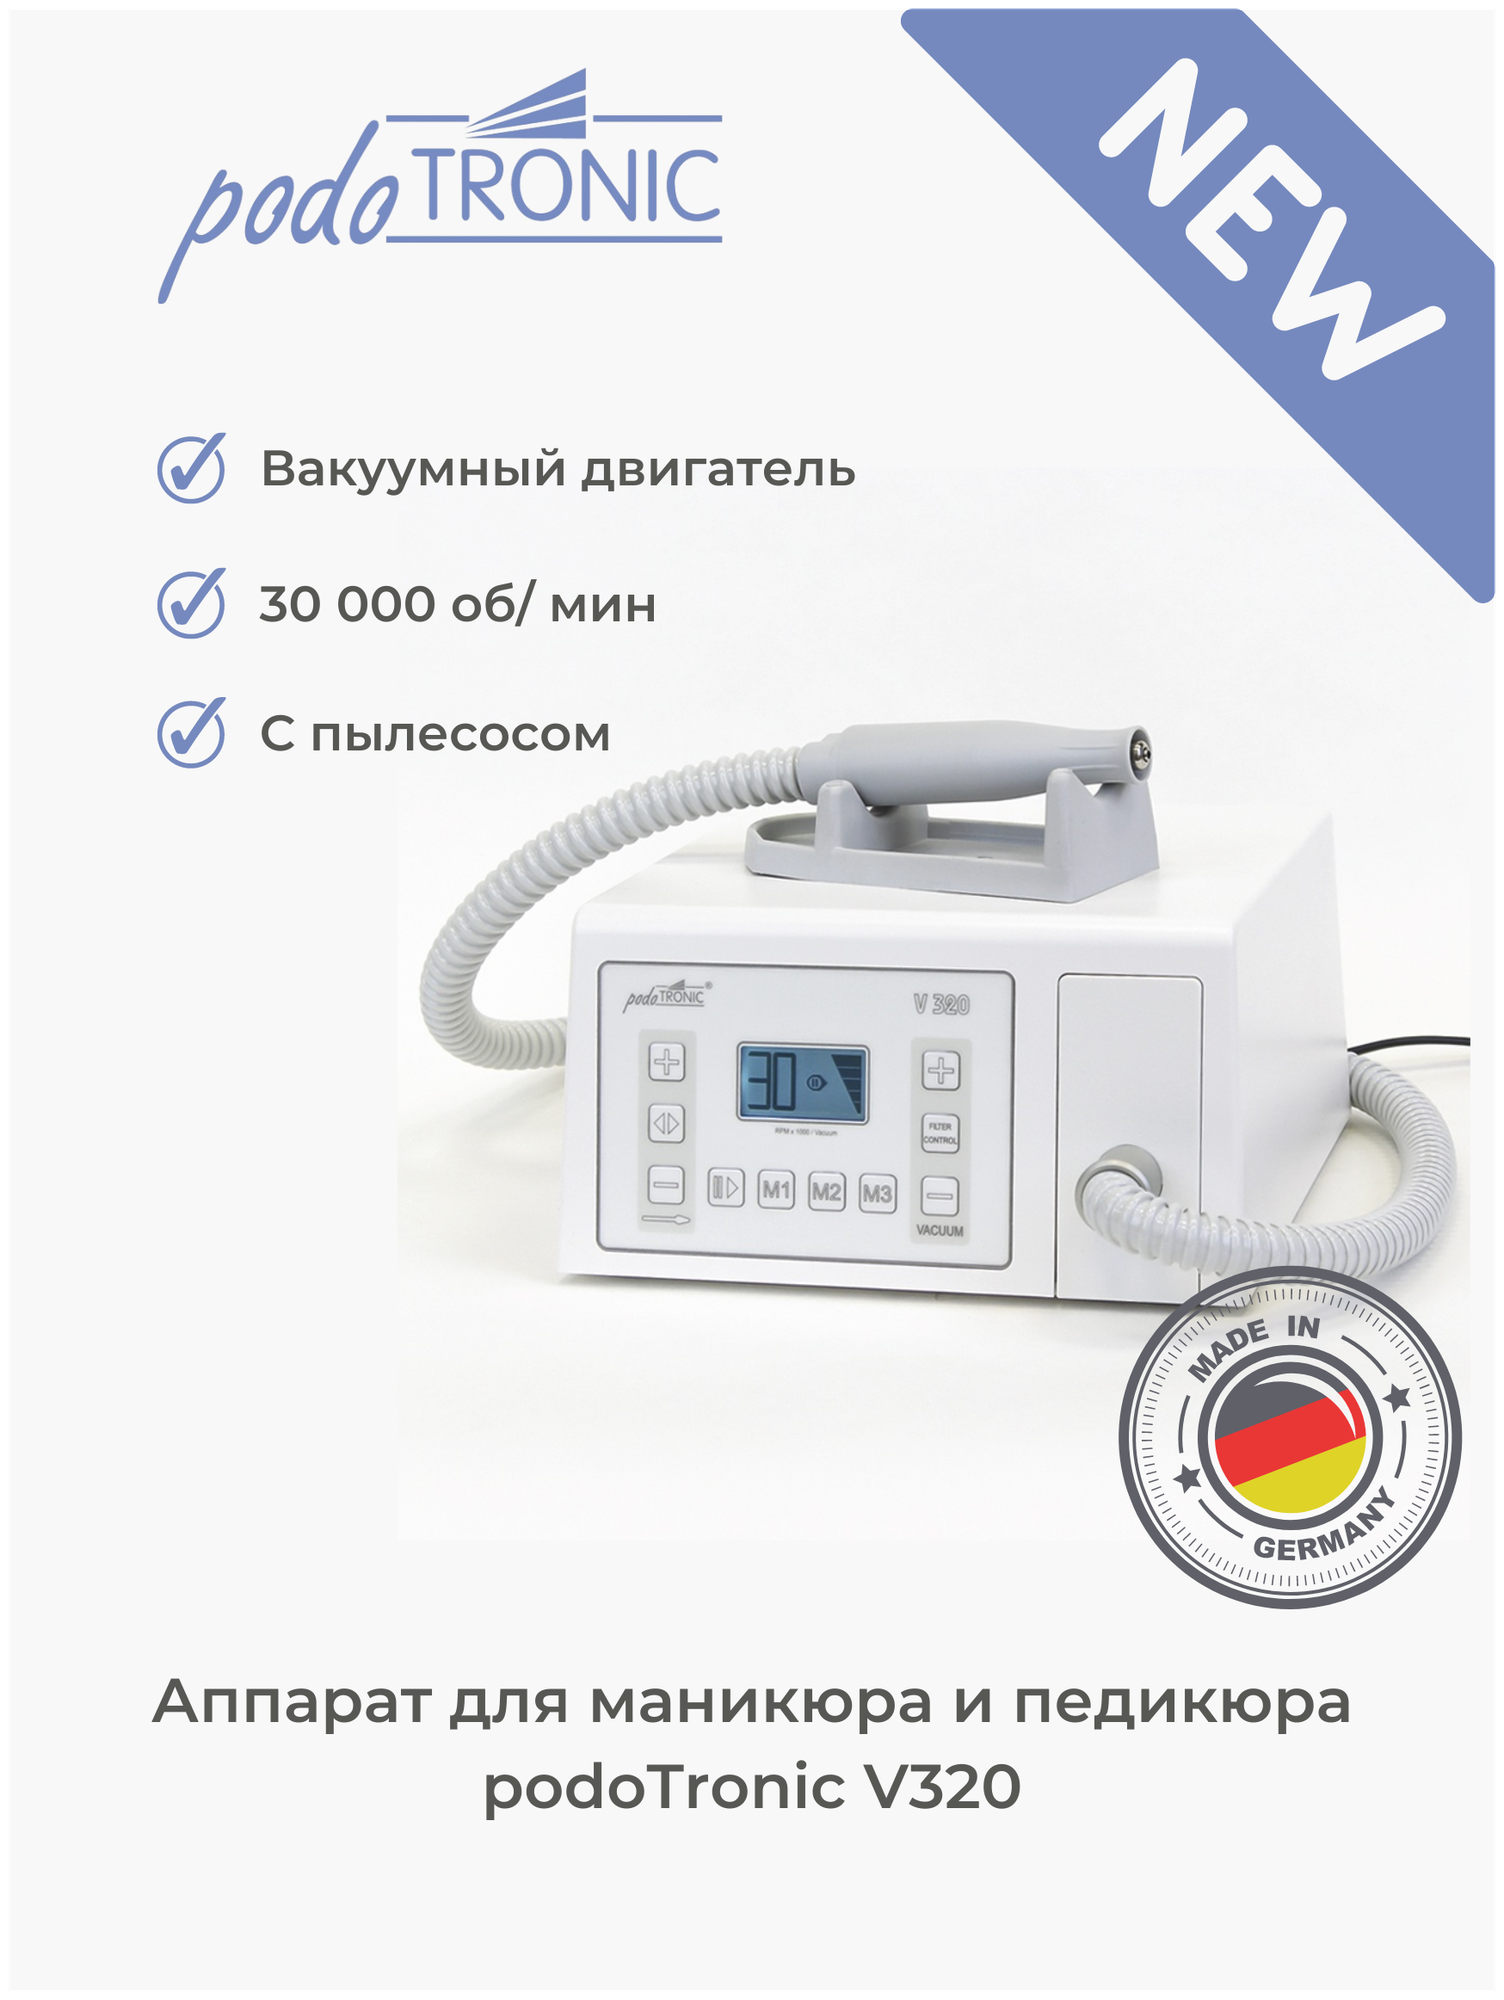 UniTronic PodoTronic Аппарат для педикюра с пылесосом "V320" (30 000 оборотов в минуту)